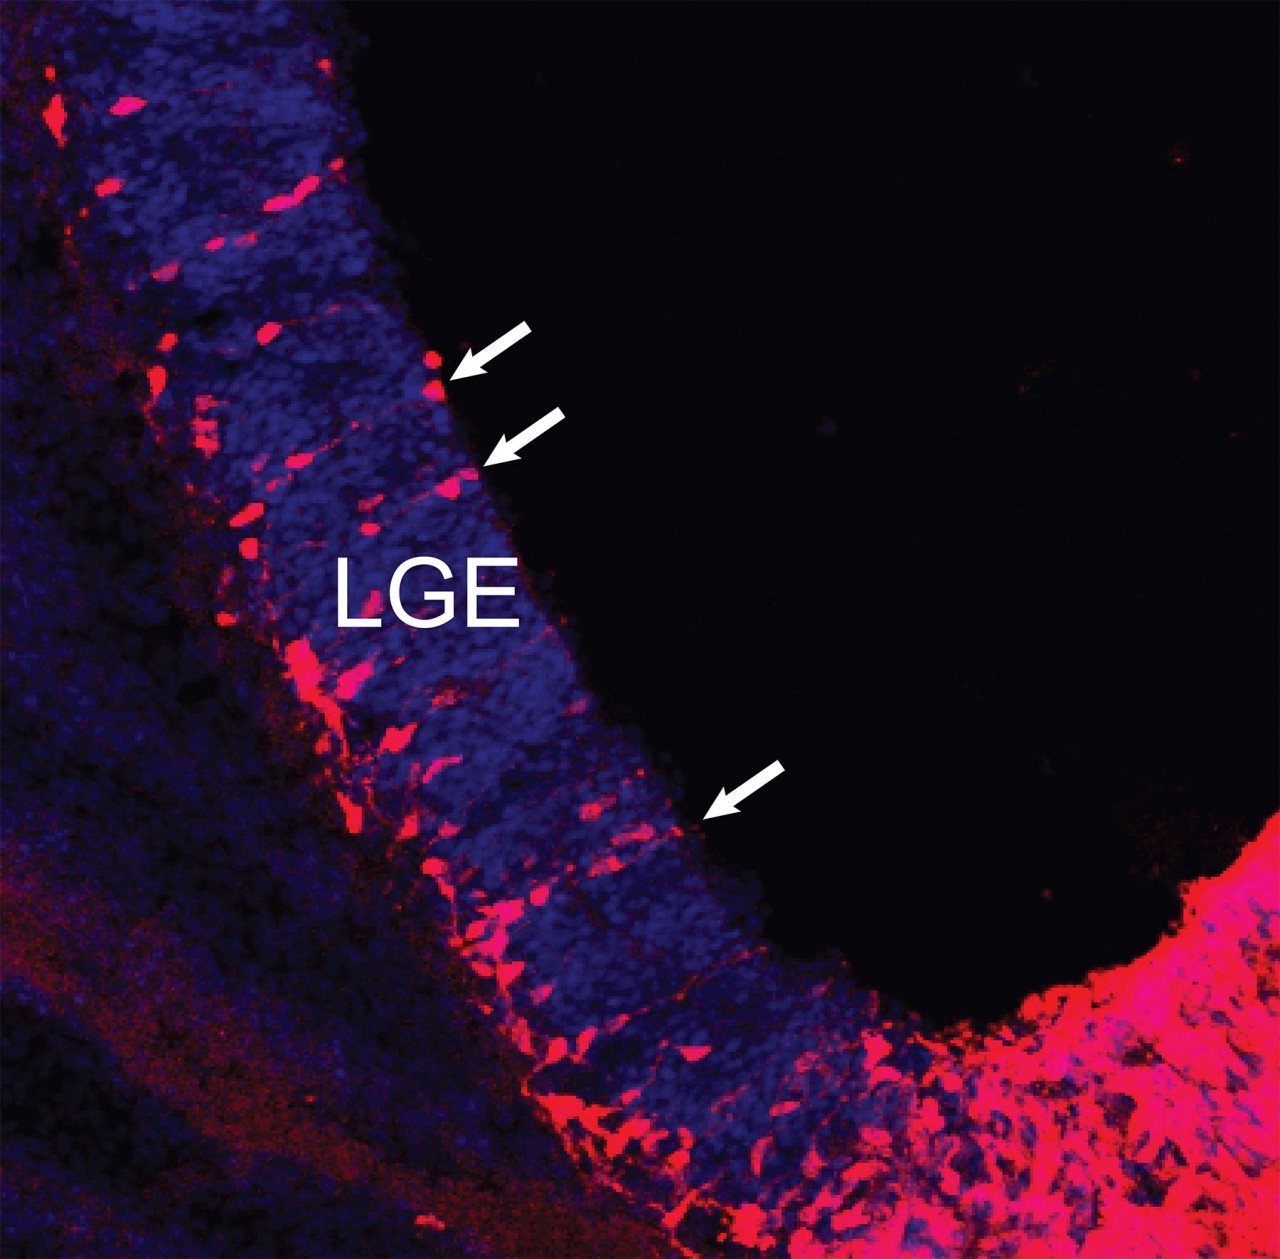 Нейроны, которые заселят полосатое тело, рождаются в латеральном ганглионарном бугорке (lateral ganglionic eminence, LGE) и начинают мигрировать. Клетки-предшественники нейронов (отмечены белыми стрелками) располагаются вблизи базальной мембраны бугорка. Они дают начало «нитям» созревающих нейронов, которые перемещаются в развивающееся полосатое тело. Позже эти нейроны сформируют там «островки» стриосом